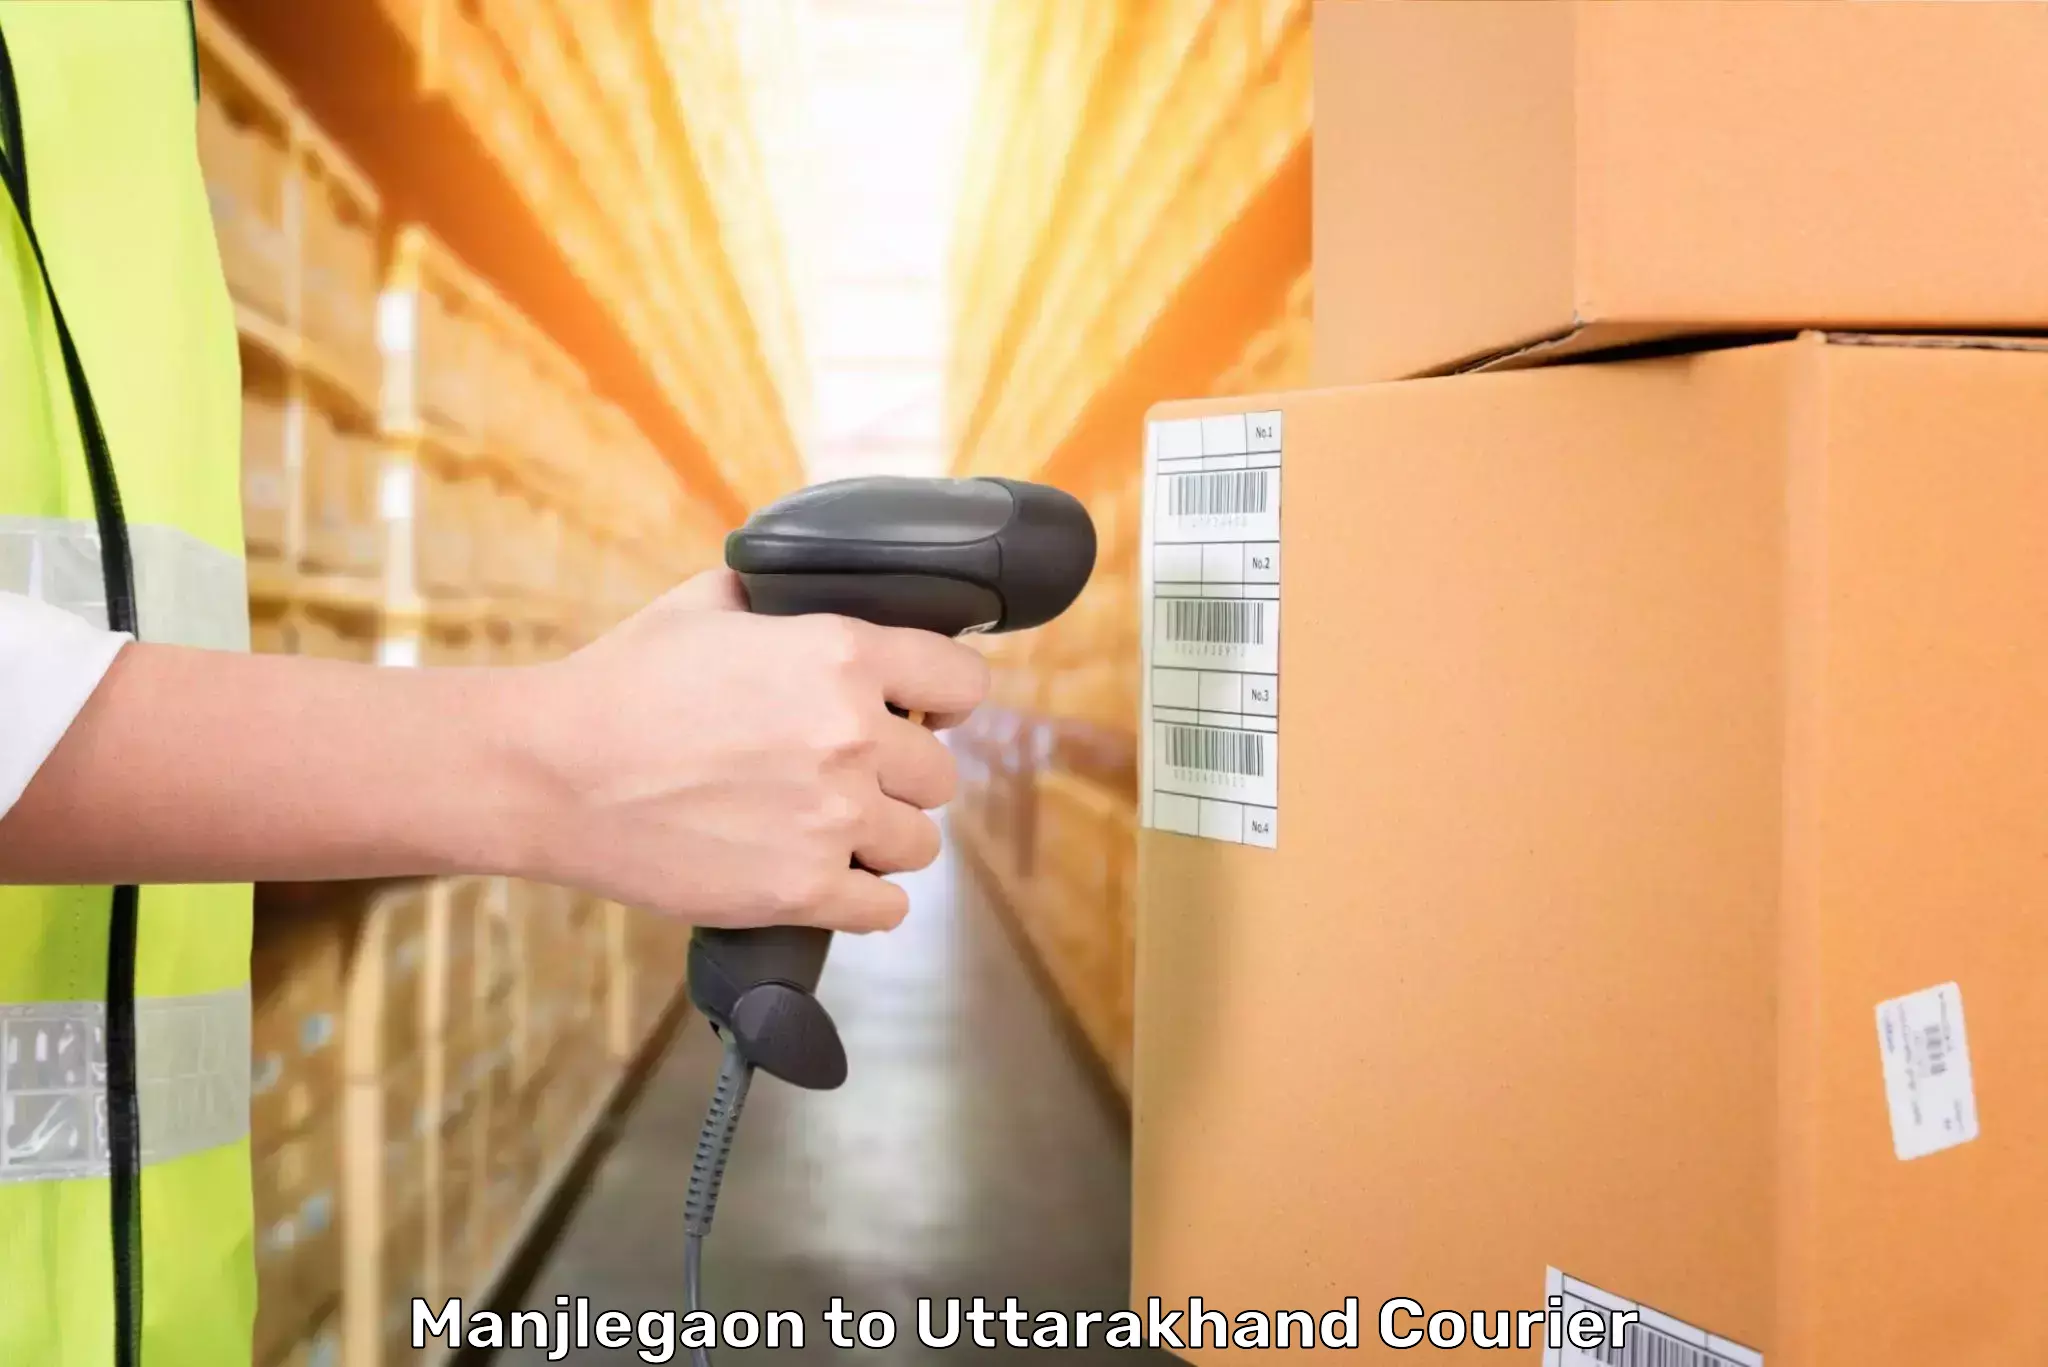 Luggage transport service Manjlegaon to Uttarkashi